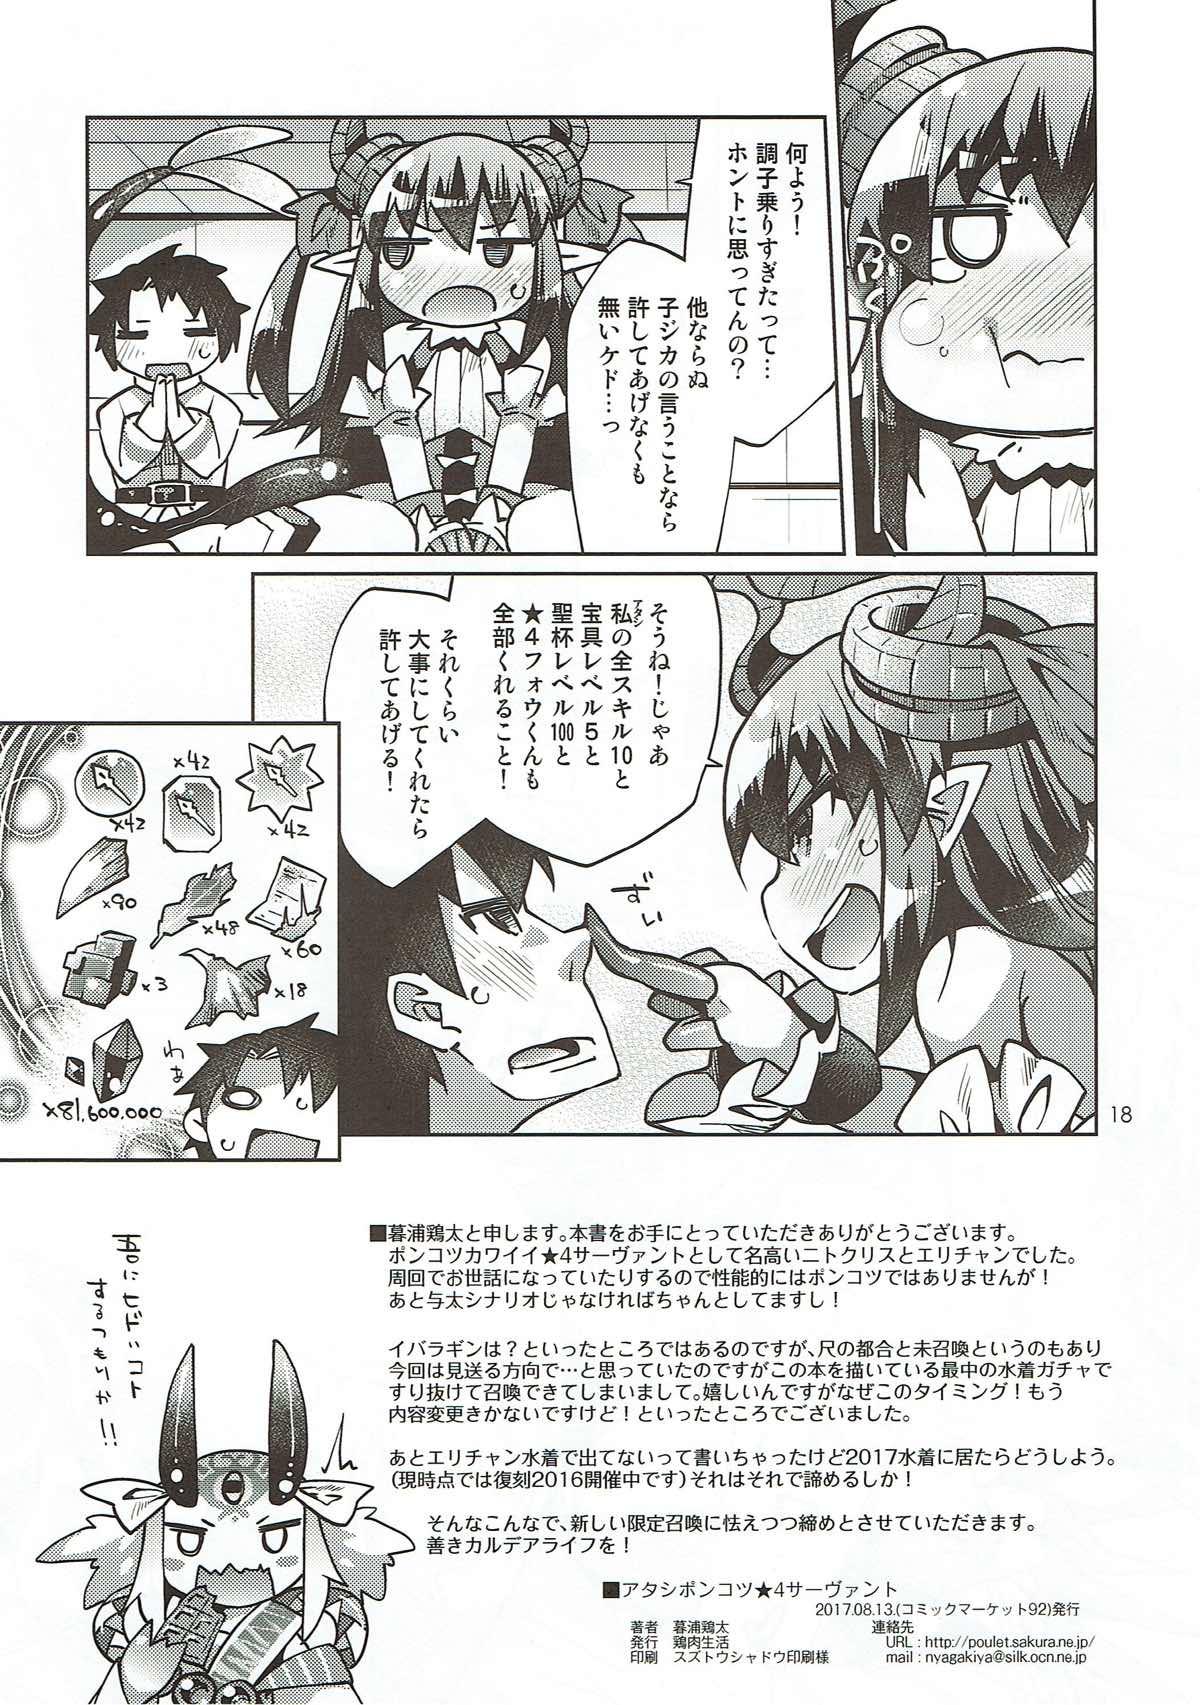 Suck Cock Atashi Ponkotsu SR Servant - Fate grand order Thot - Page 17